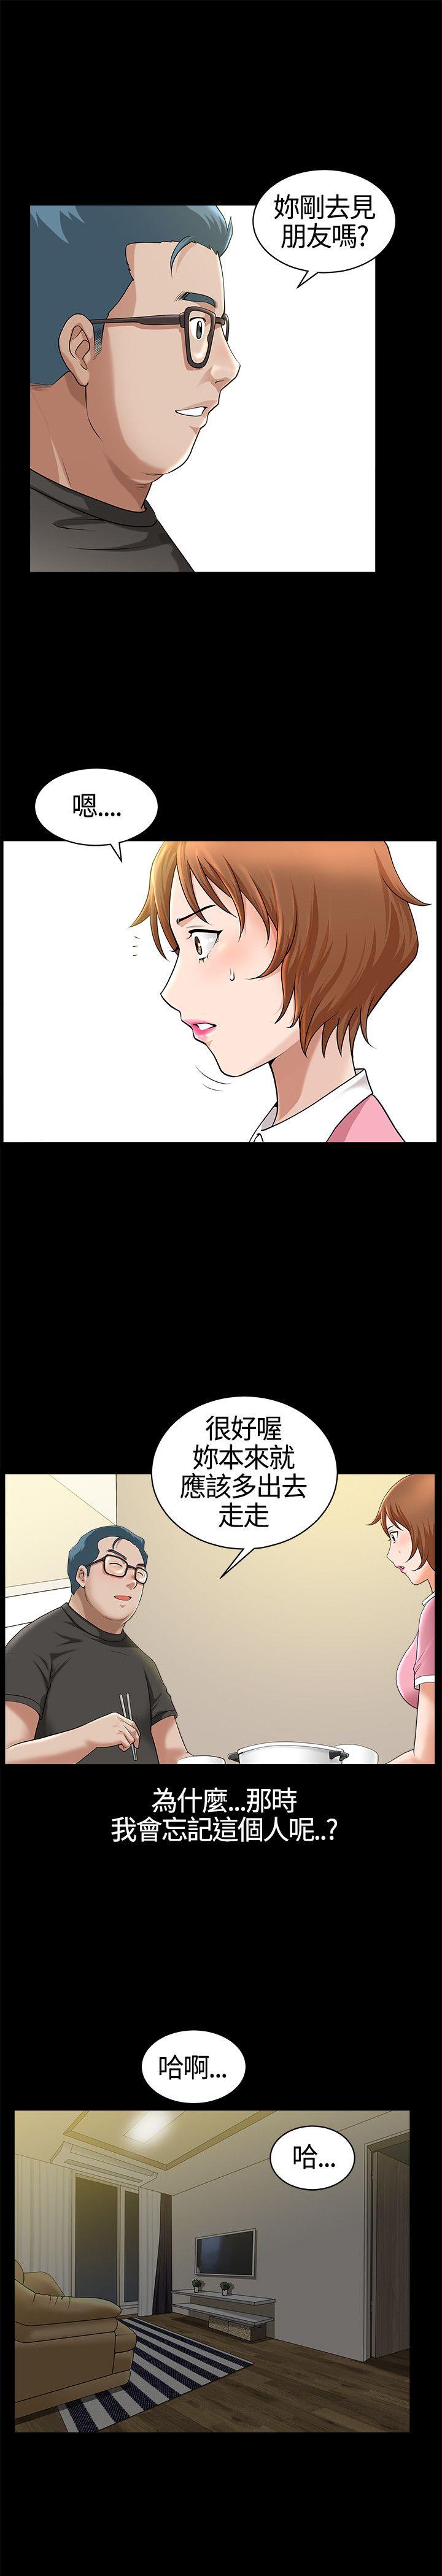 韩国污漫画 人妻性解放3:粗糙的手 第16话 9